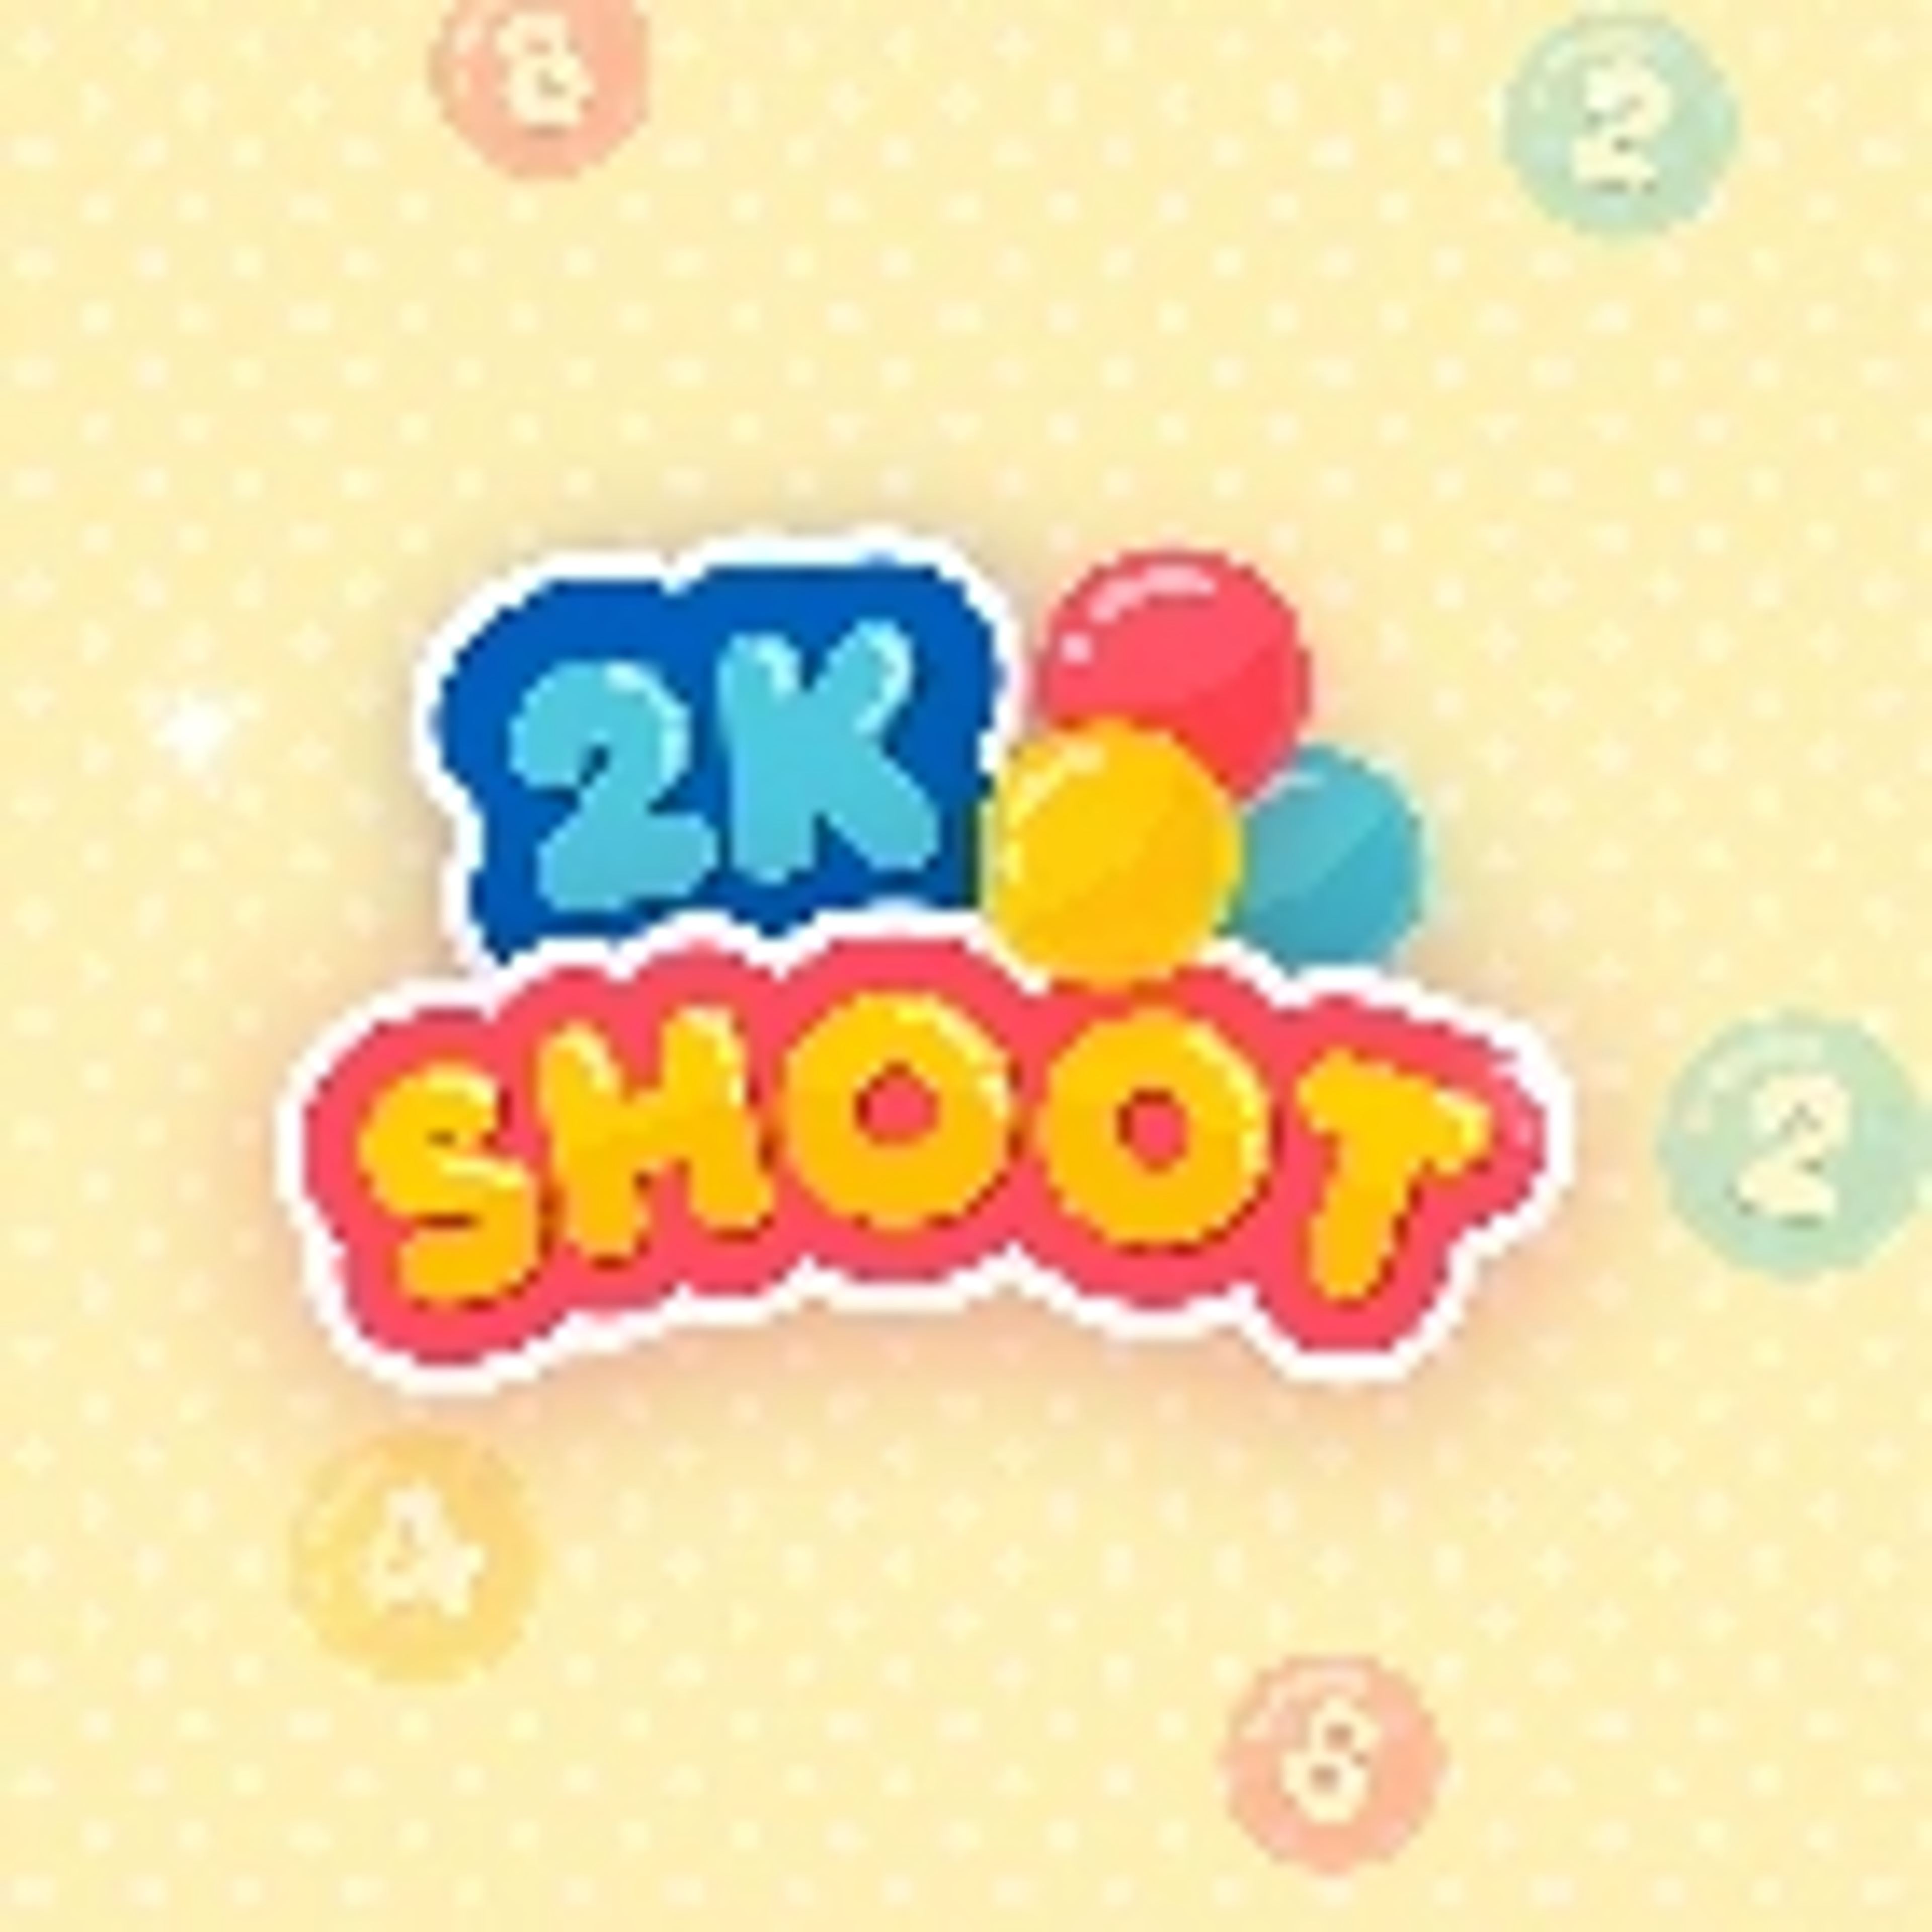 2K Shoot